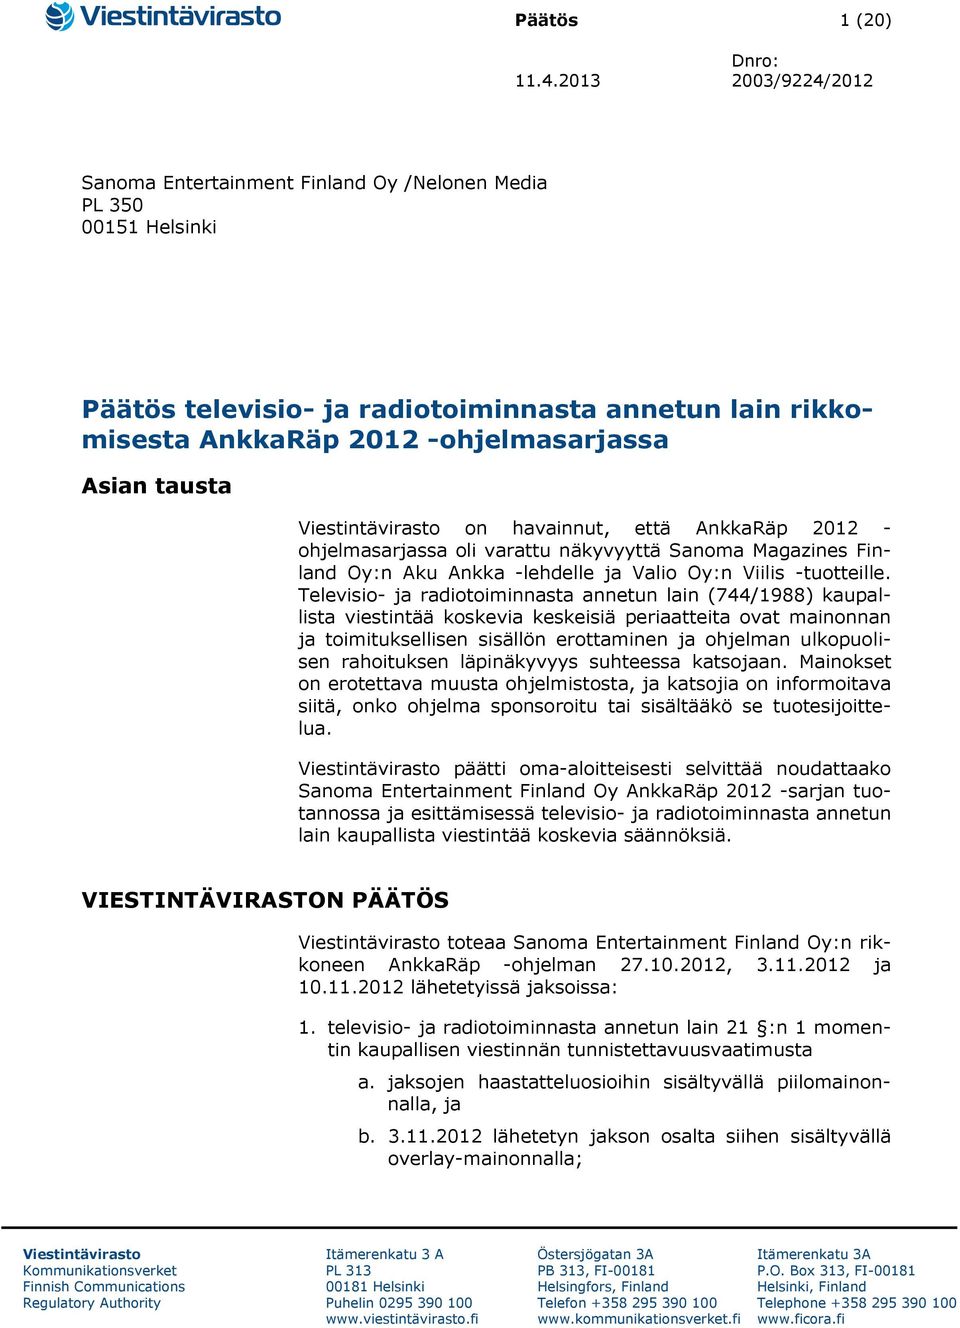 Viestintävirasto on havainnut, että AnkkaRäp 2012 - ohjelmasarjassa oli varattu näkyvyyttä Sanoma Magazines Finland Oy:n Aku Ankka -lehdelle ja Valio Oy:n Viilis -tuotteille.